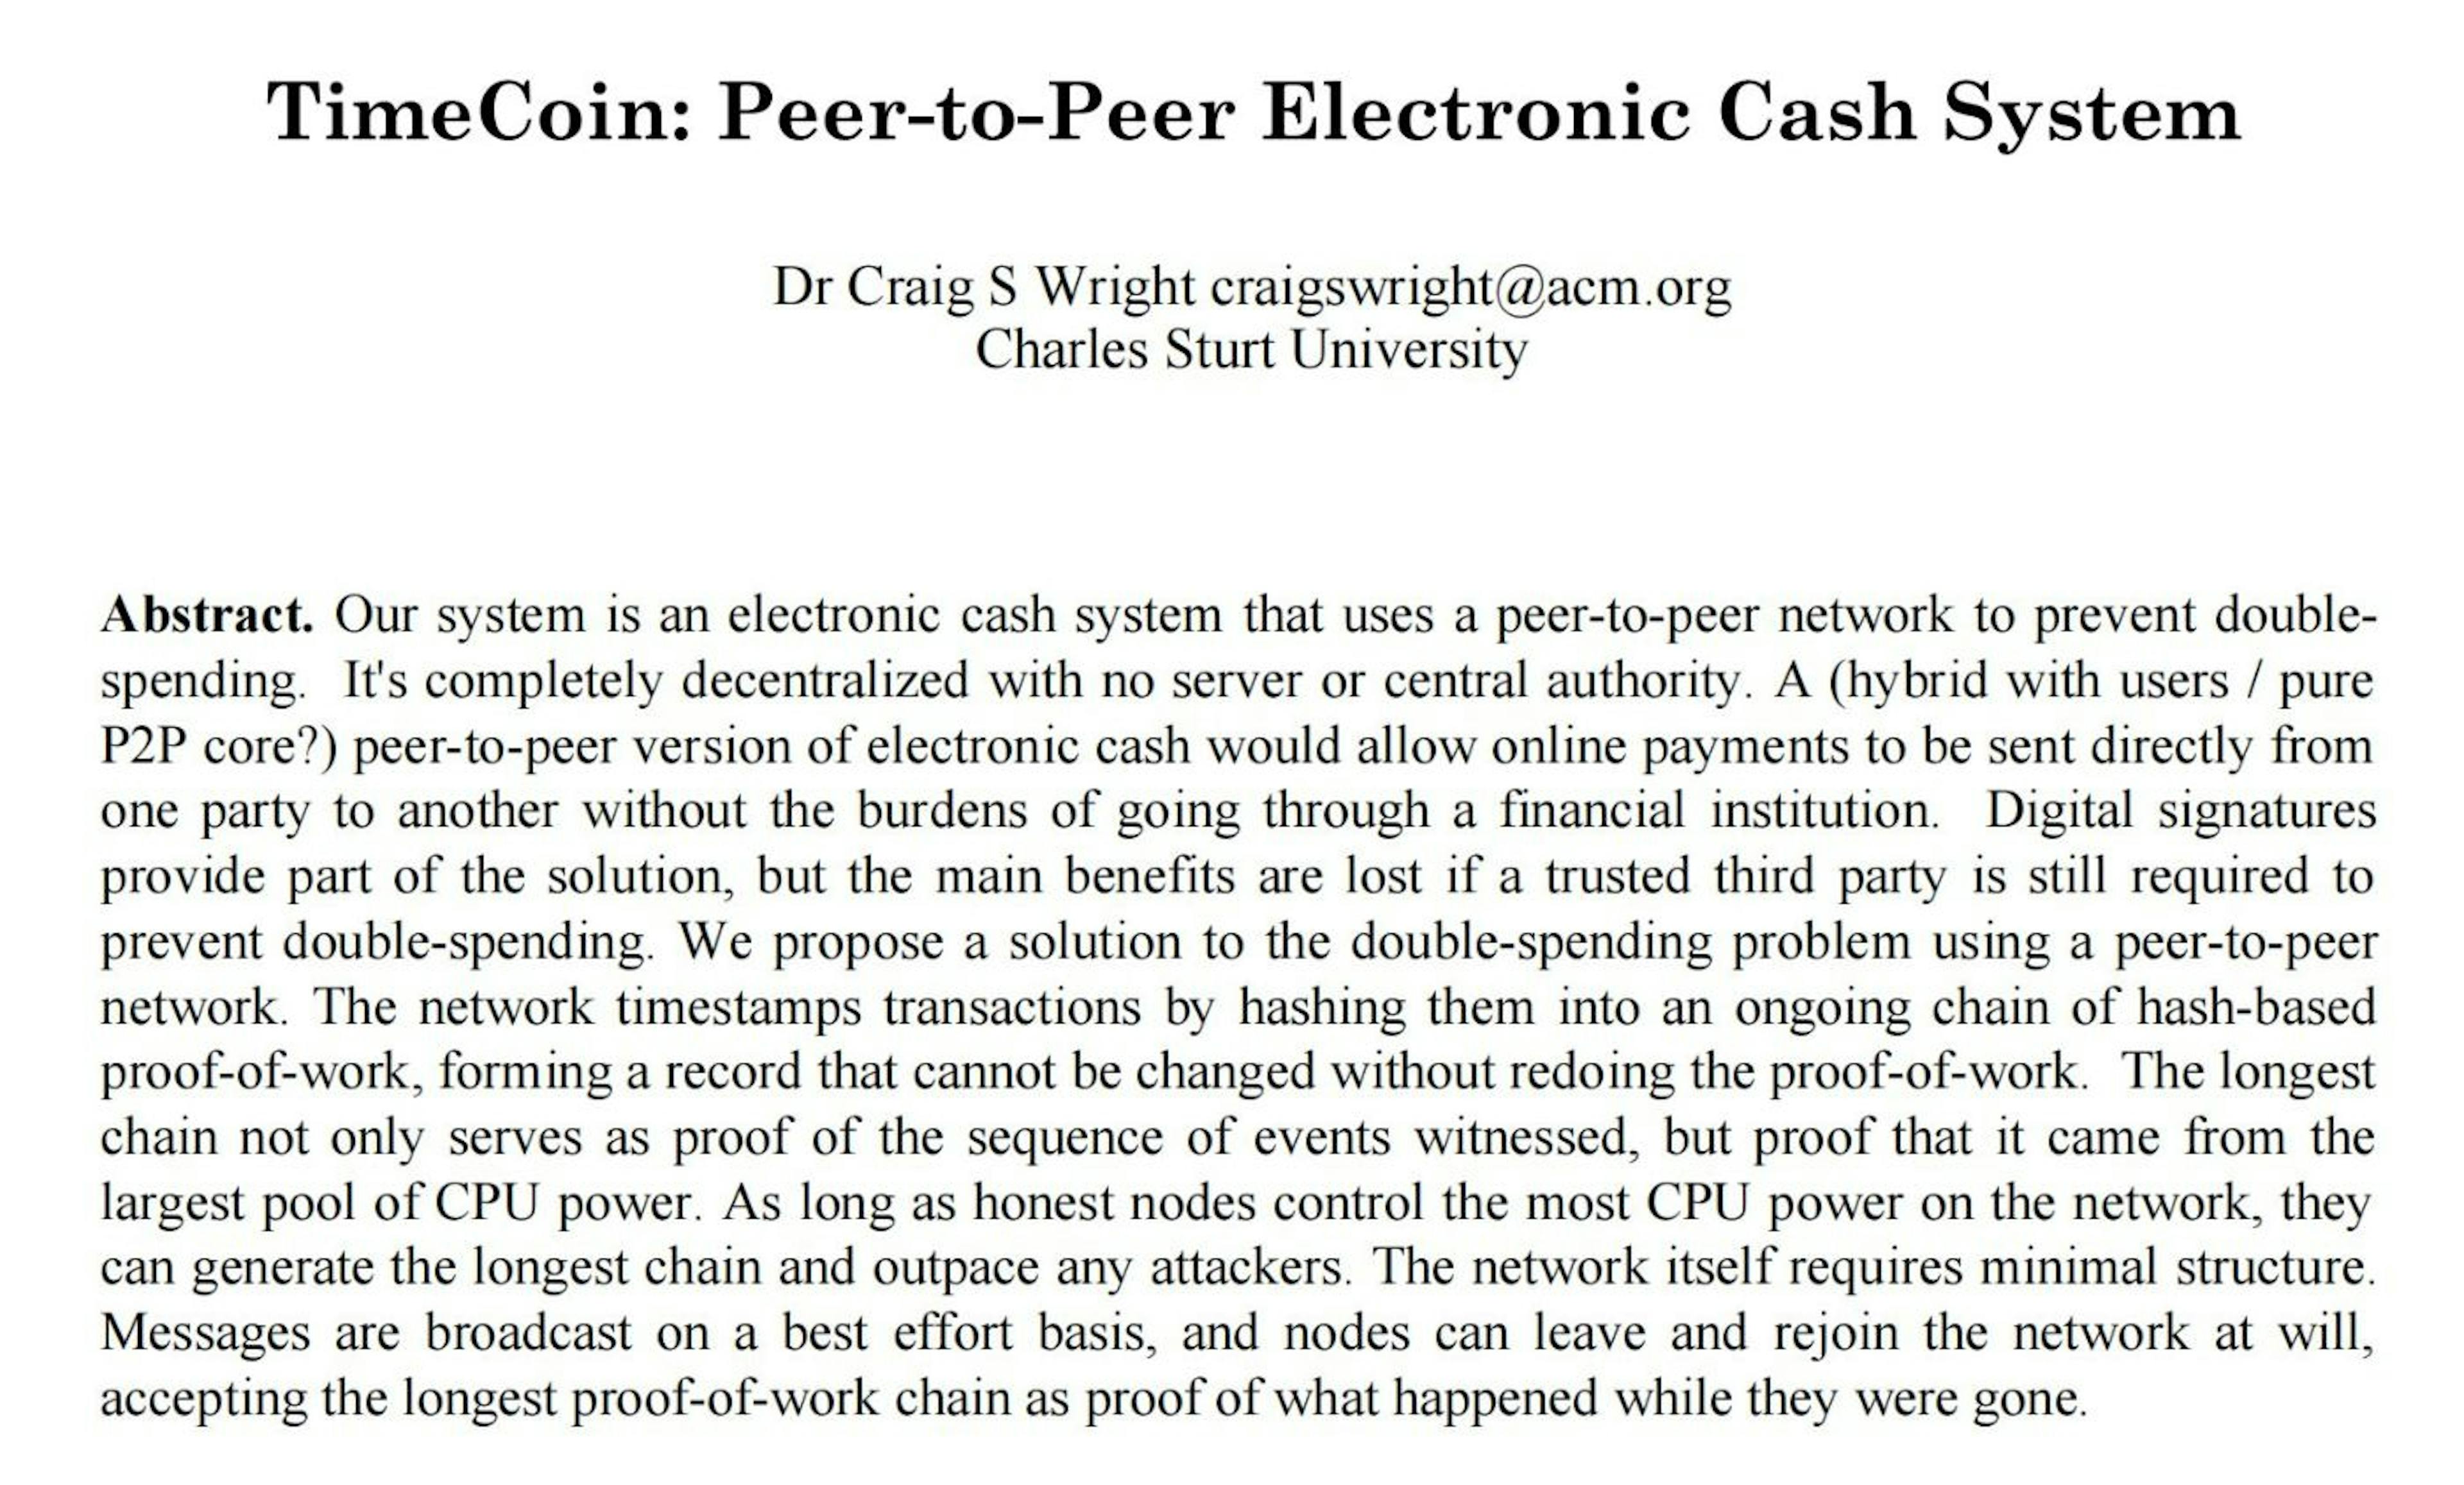 2019 年，Craig Wright 从 bitcoin.org 获取了公开的 2009 年 PDF 版比特币白皮书，并尝试对其进行修改，使其看起来像 2008 年初的比特币白皮书草稿。他的锻造过程的一部分是将比特币改为时间币（笑），并草率地调整了原始 PDF 文件的元数据。